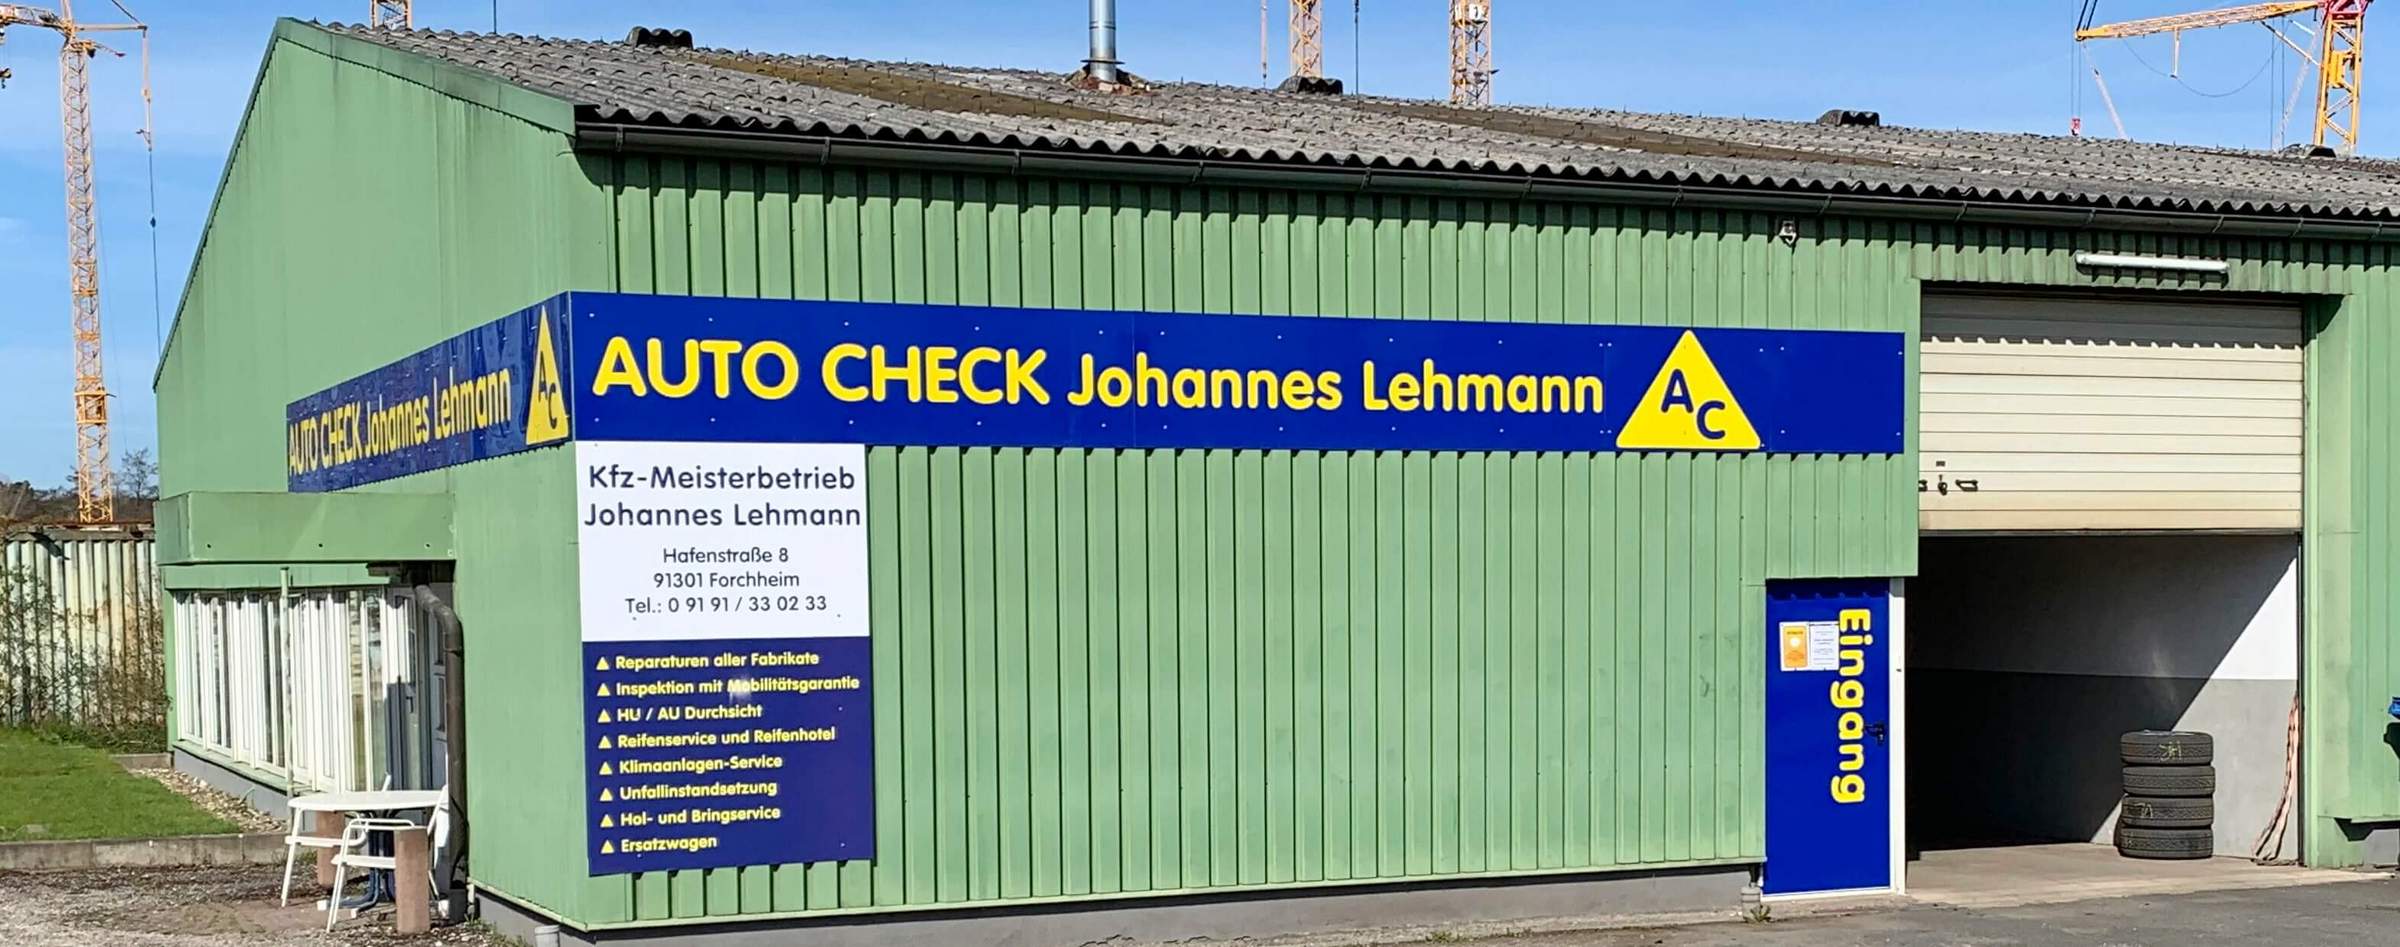 Auto Check Johannes Lehmann